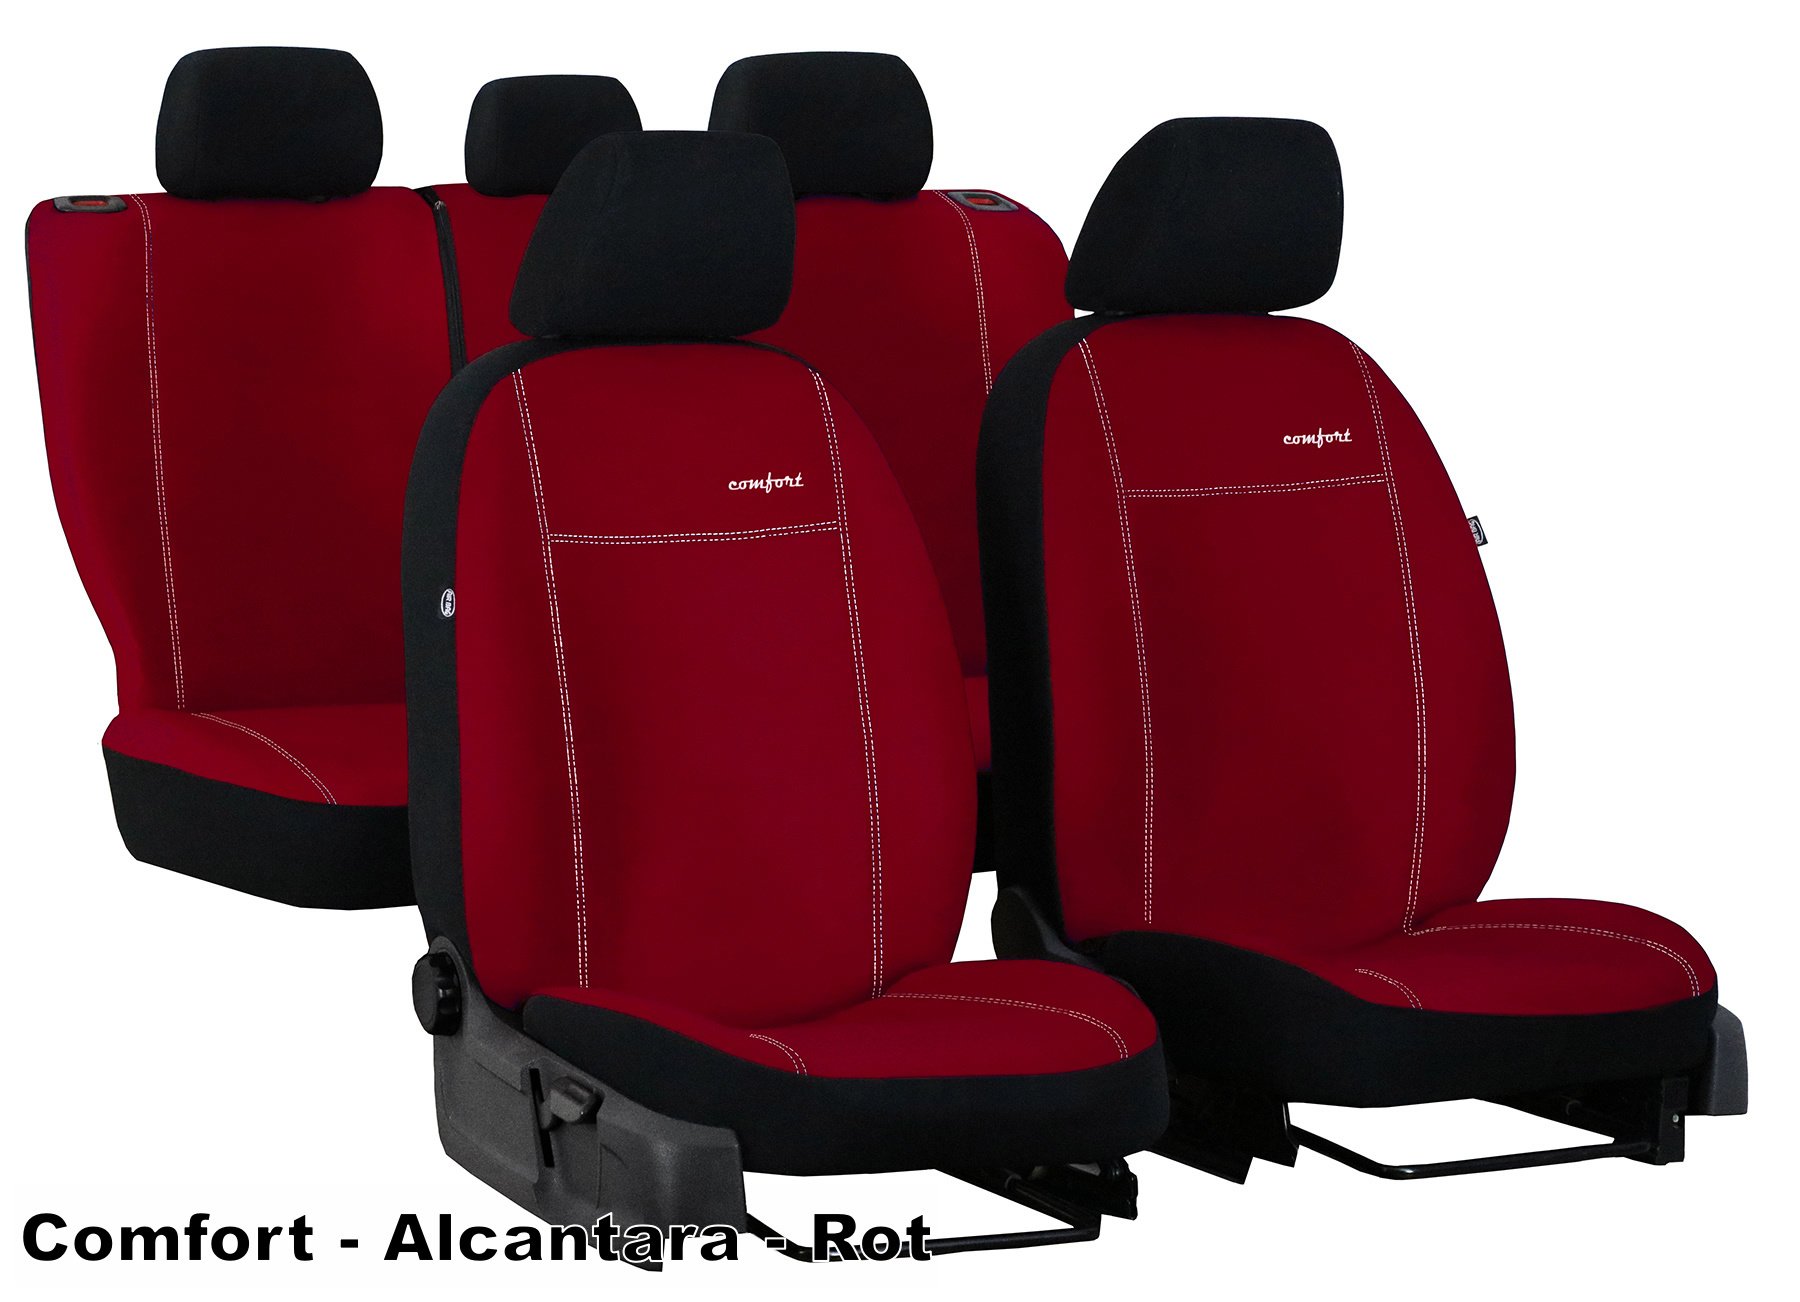 HA Handels GmbH Autositzbezüge passend für Seat Ateca in Schwarz Weiß  Auto-Sitzbezüge Vordersitze Auto-Sitzbezug Universal Set Fahrersitz und